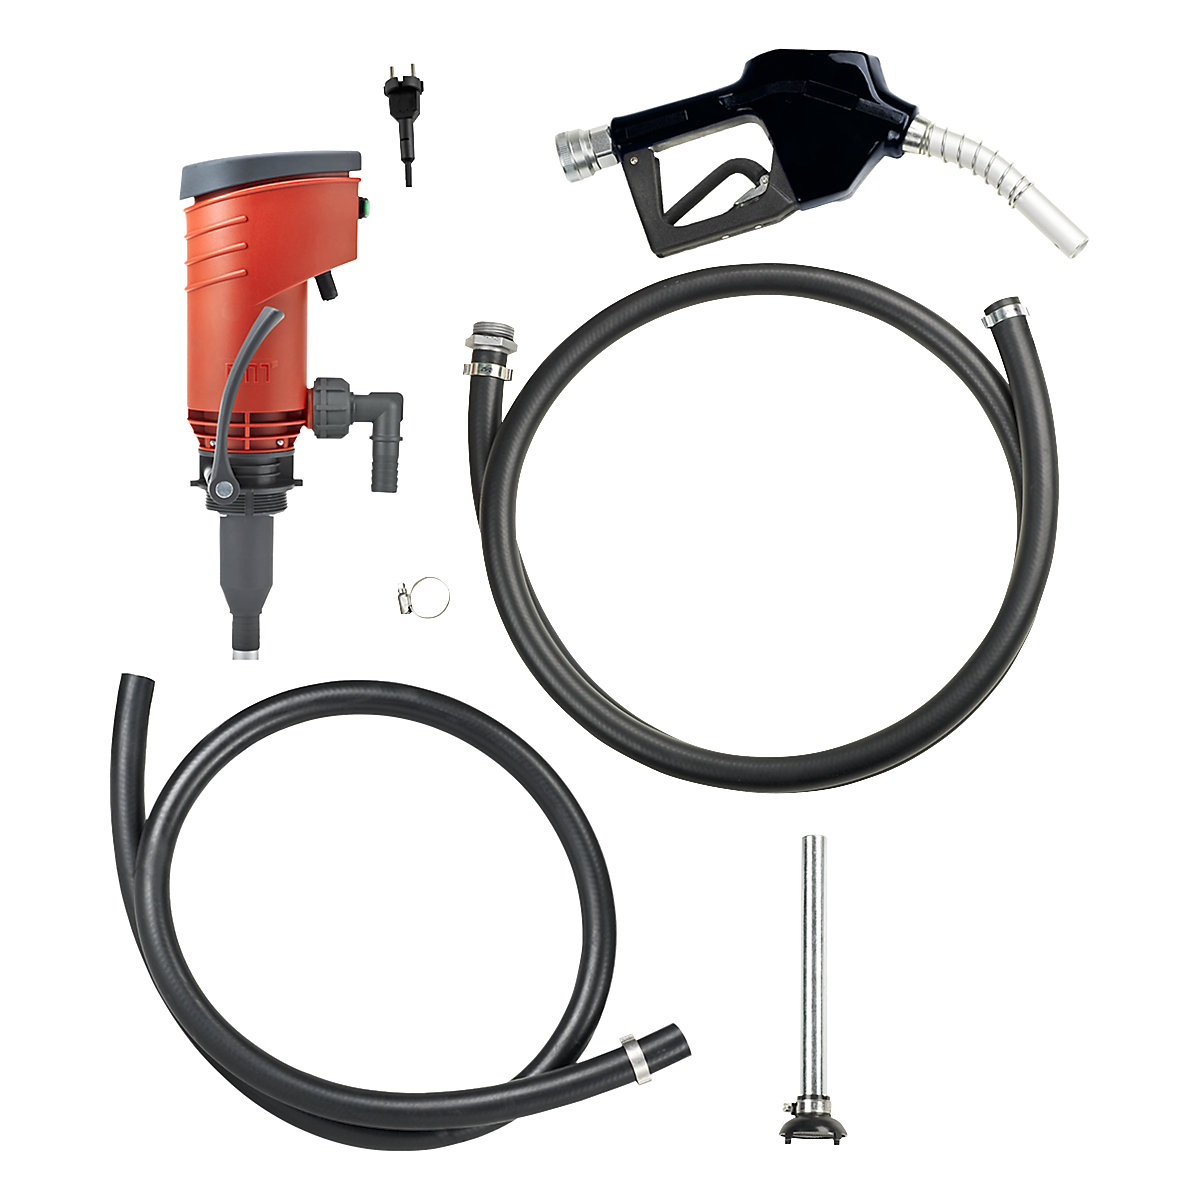 Pompa elettrica per fusto/serbatoio per gasolio e diesel – PRESSOL: con  pistola di erogazione automatica